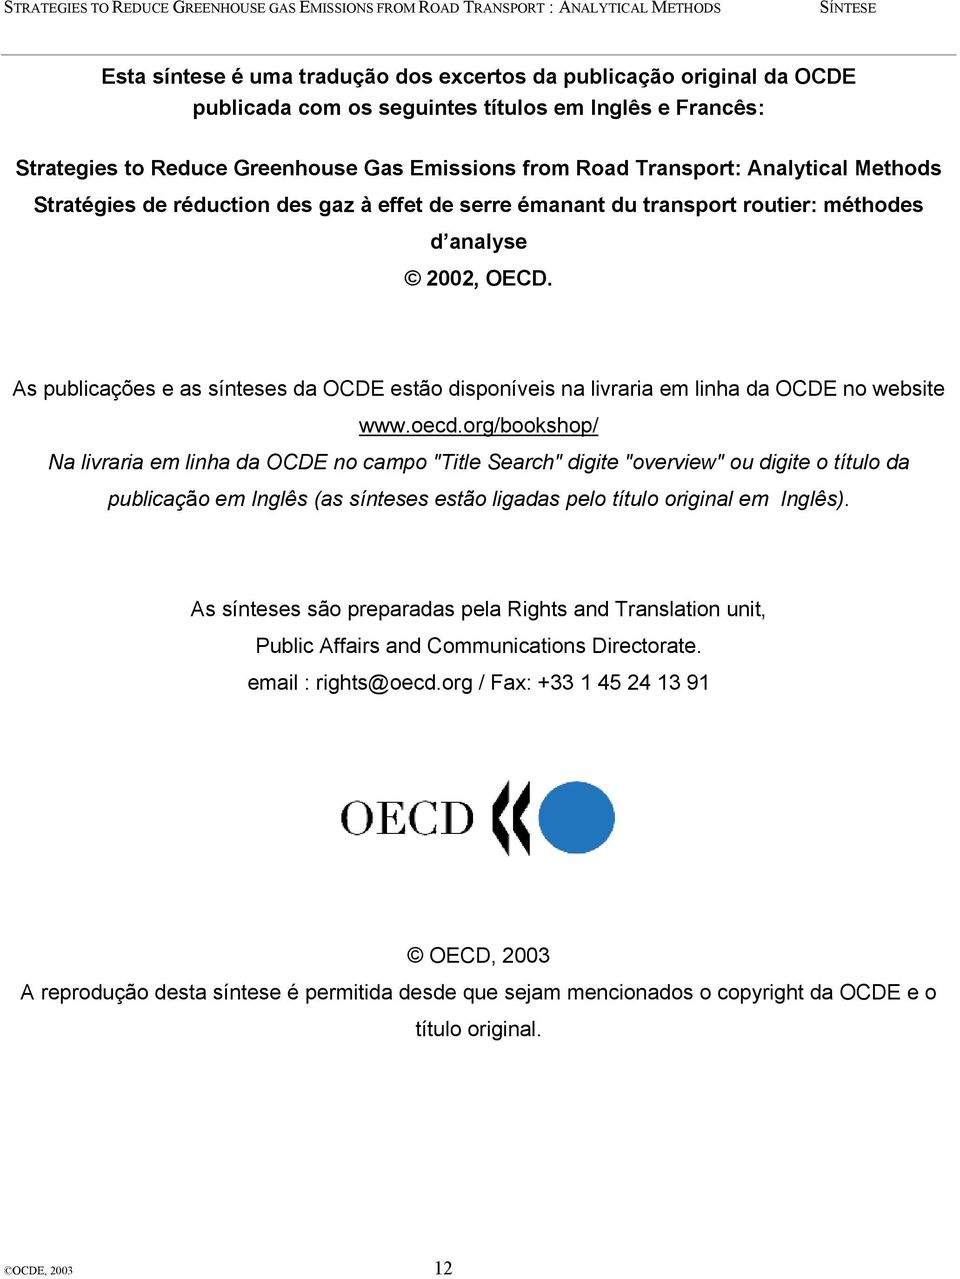 As publicações e as sínteses da OCDE estão disponíveis na livraria em linha da OCDE no website www.oecd.